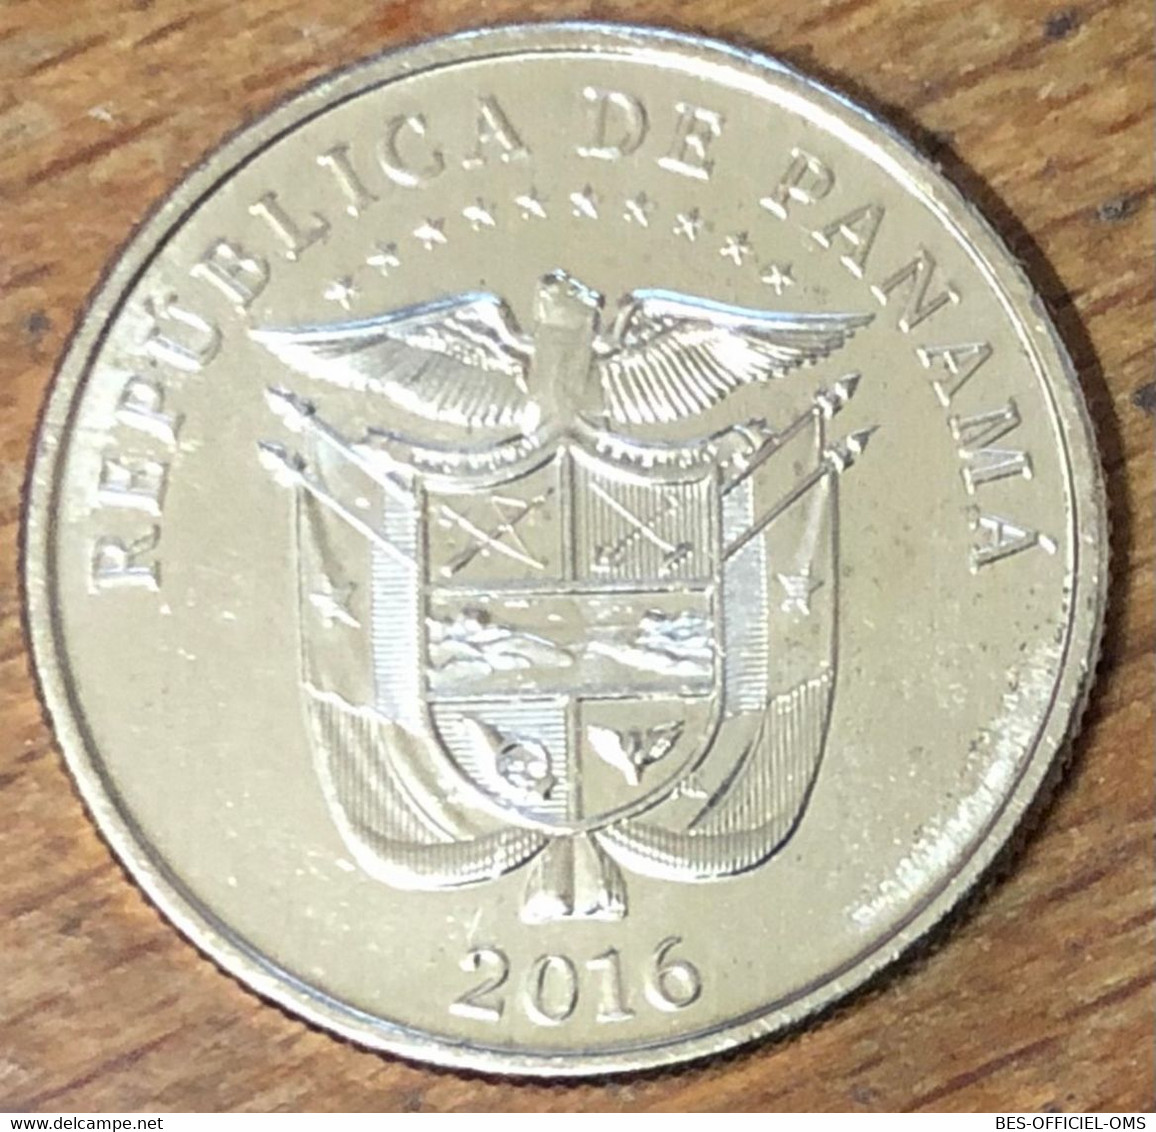 PANAMA MONNAIE UN CUARTO DE BALBOA 2016 CANAL DE PANAMA MÉDAILLE JETON TOURISTIQUE MEDALS TOKENS COINS - Autres – Amérique